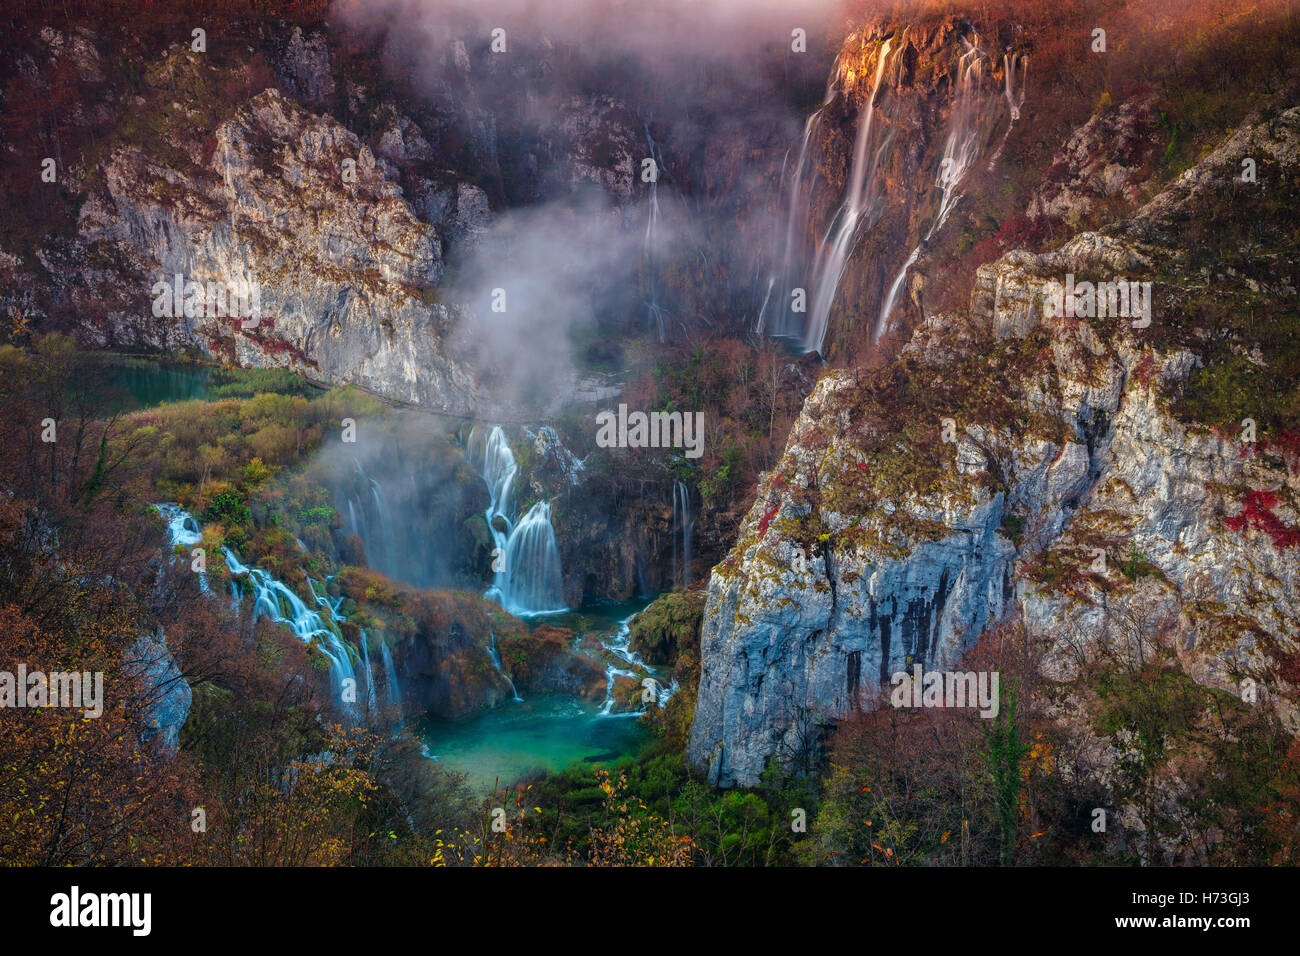 Laghi di Plitvice cascata in autunno. Immagine della cascata che si trova nel parco nazionale di Plitvice, Croazia durante l'autunno all'alba. Foto Stock